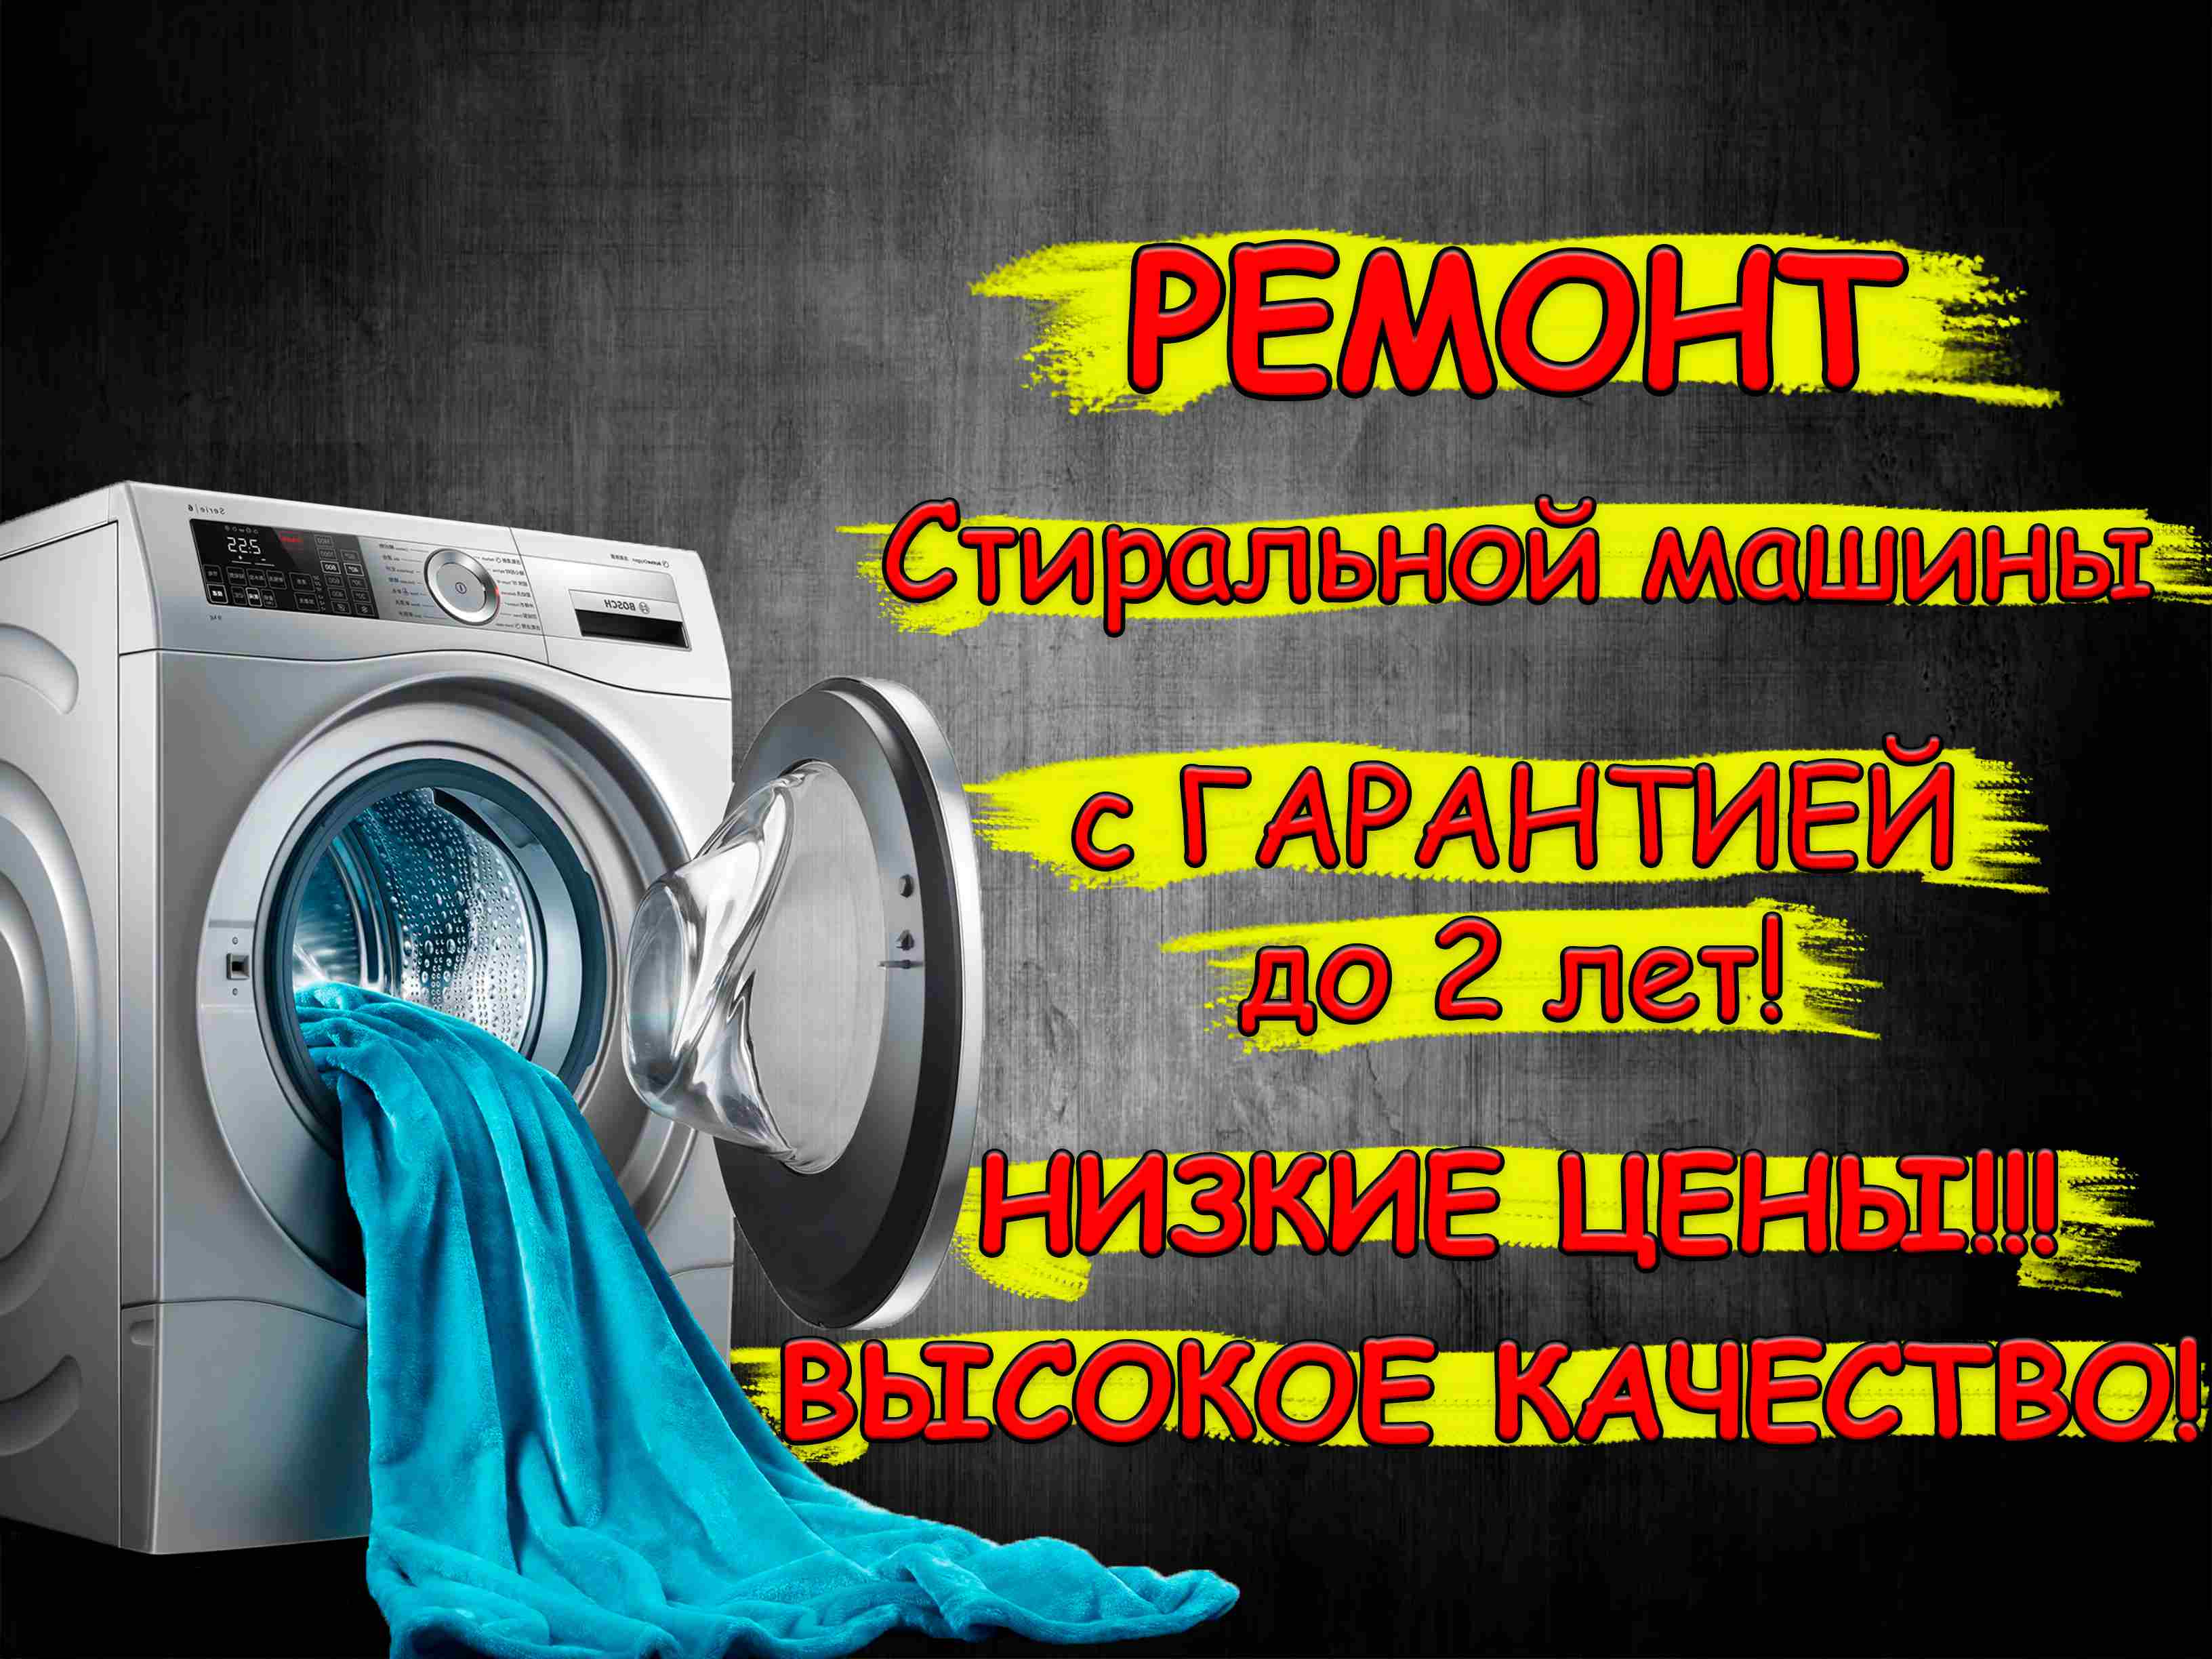 Ремонт стиральных машин Evgo на дому | hb-crm.ru | Вызов стирального мастера